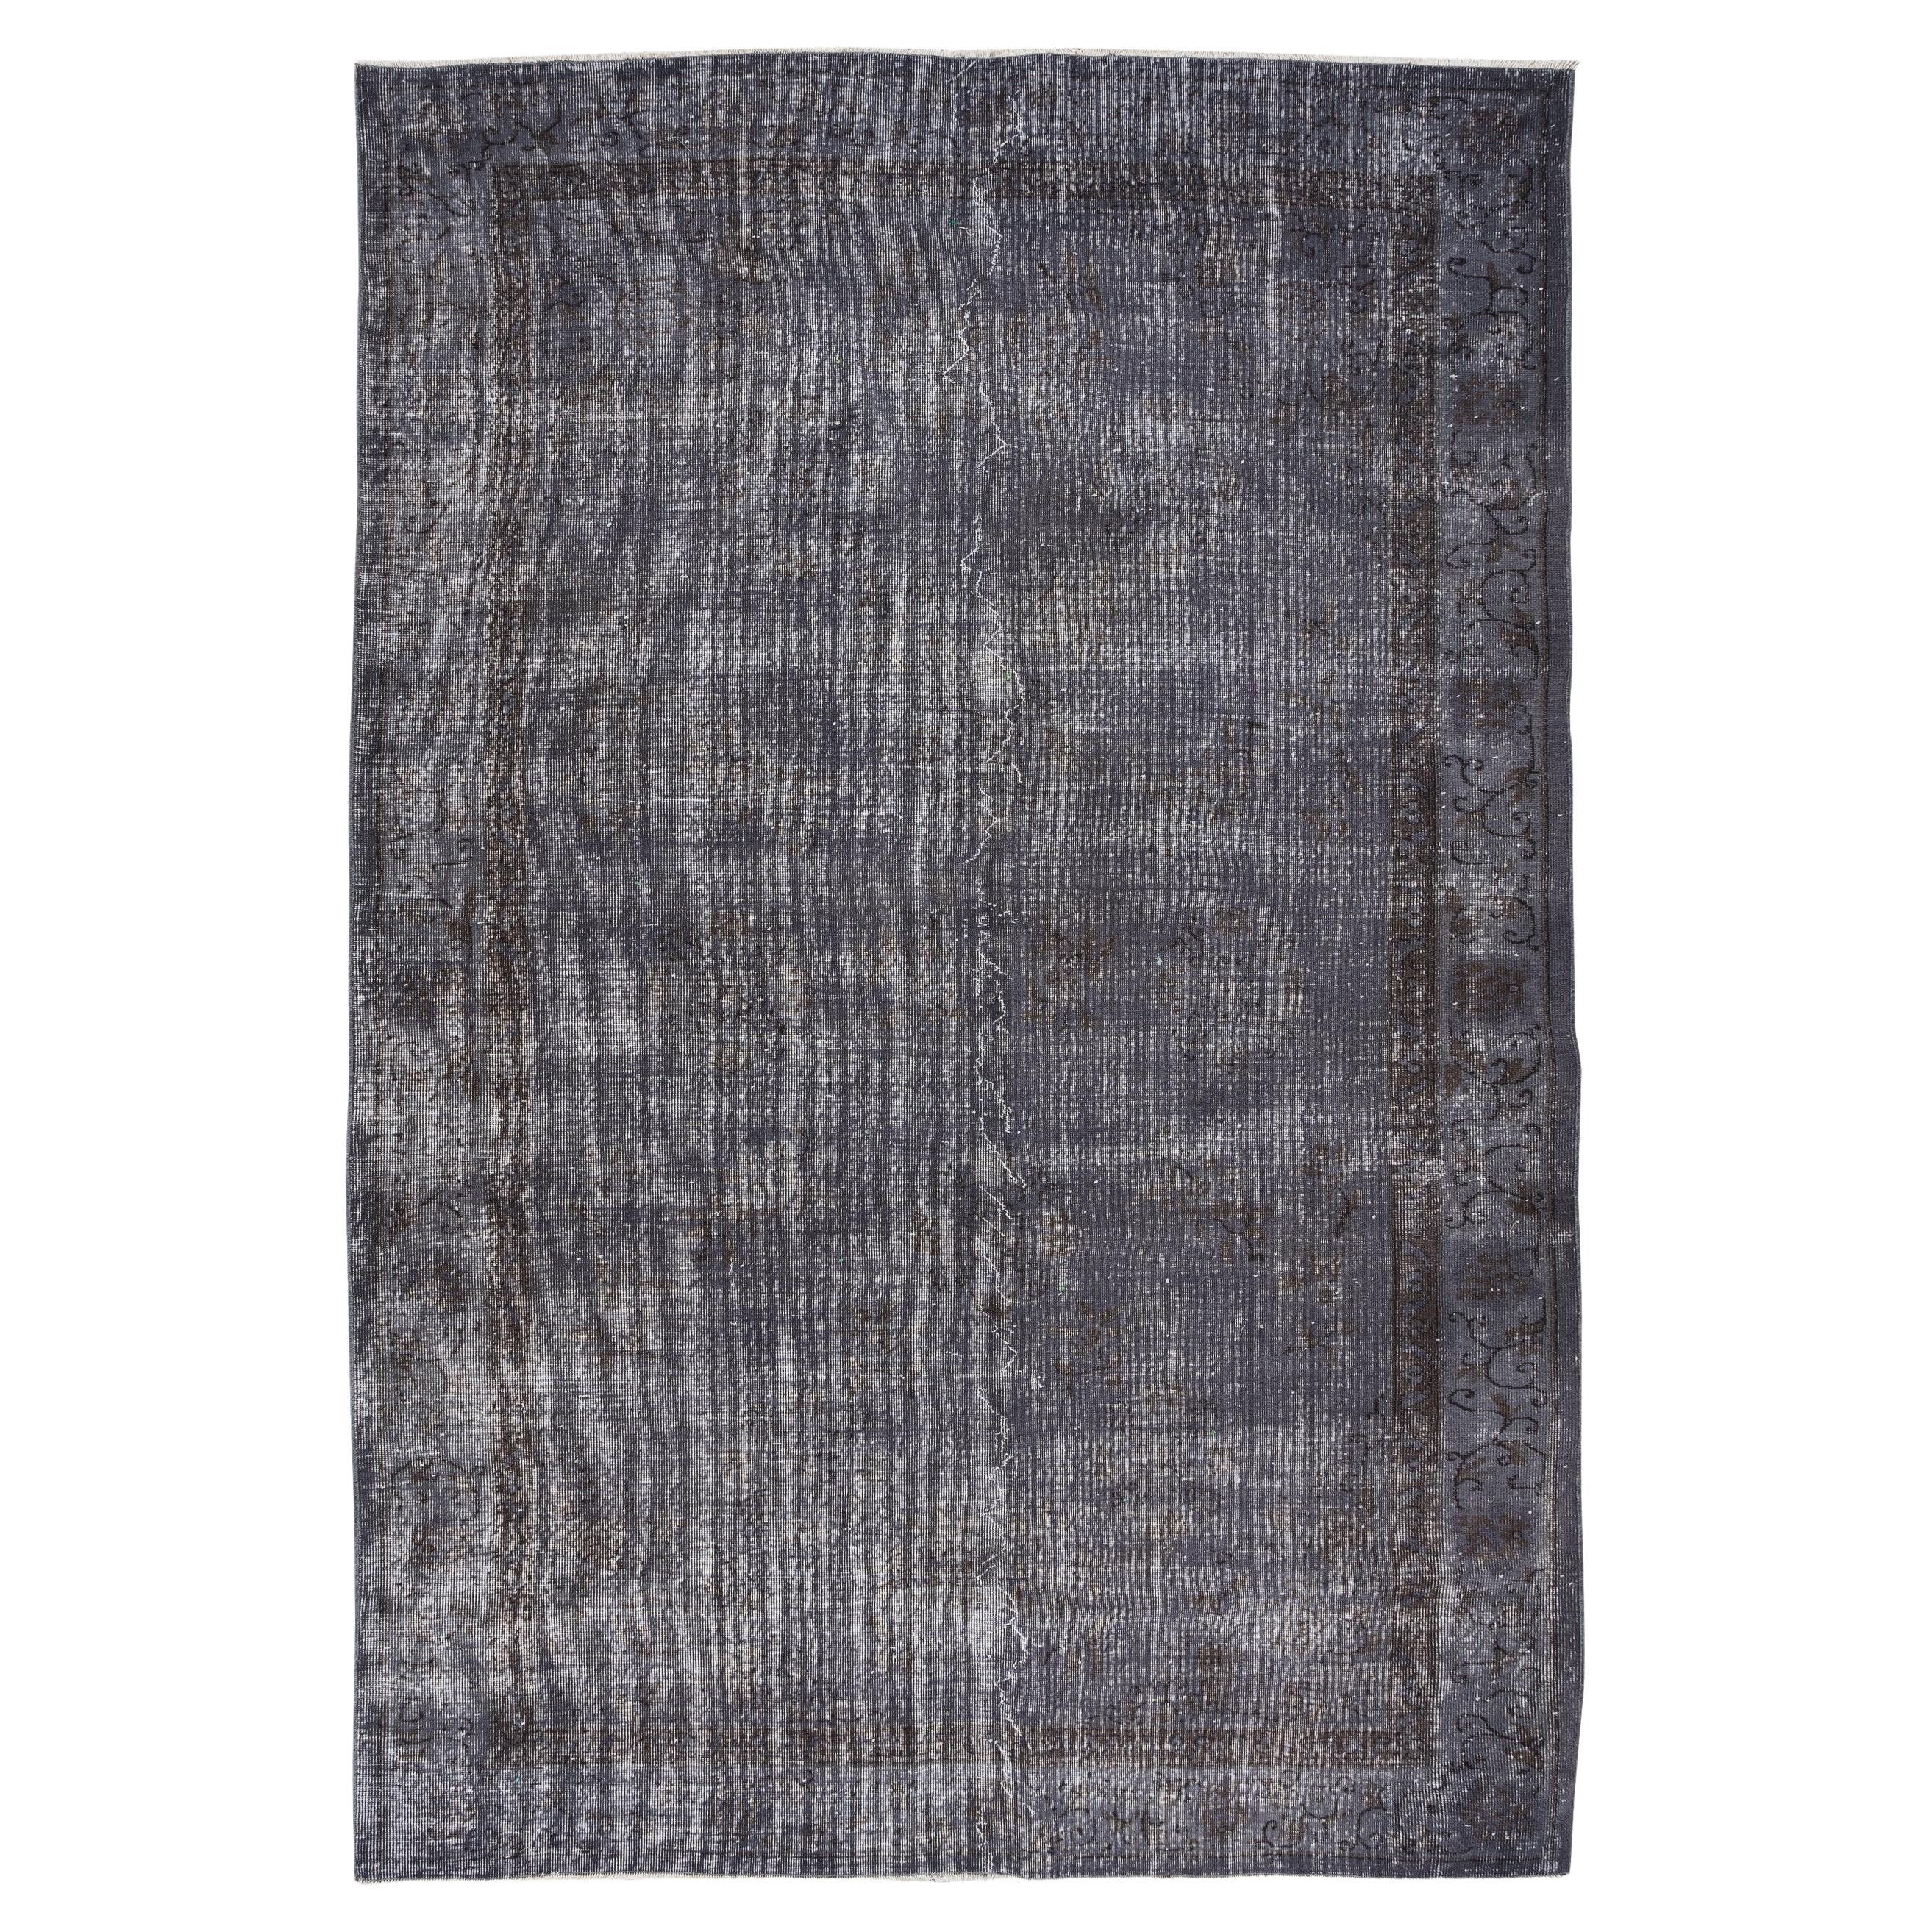 7x10.7 Ft Moderner grauer Teppich, Bodenbezug aus Wolle, handgefertigt, türkischer Teppich aus den 1960er Jahren